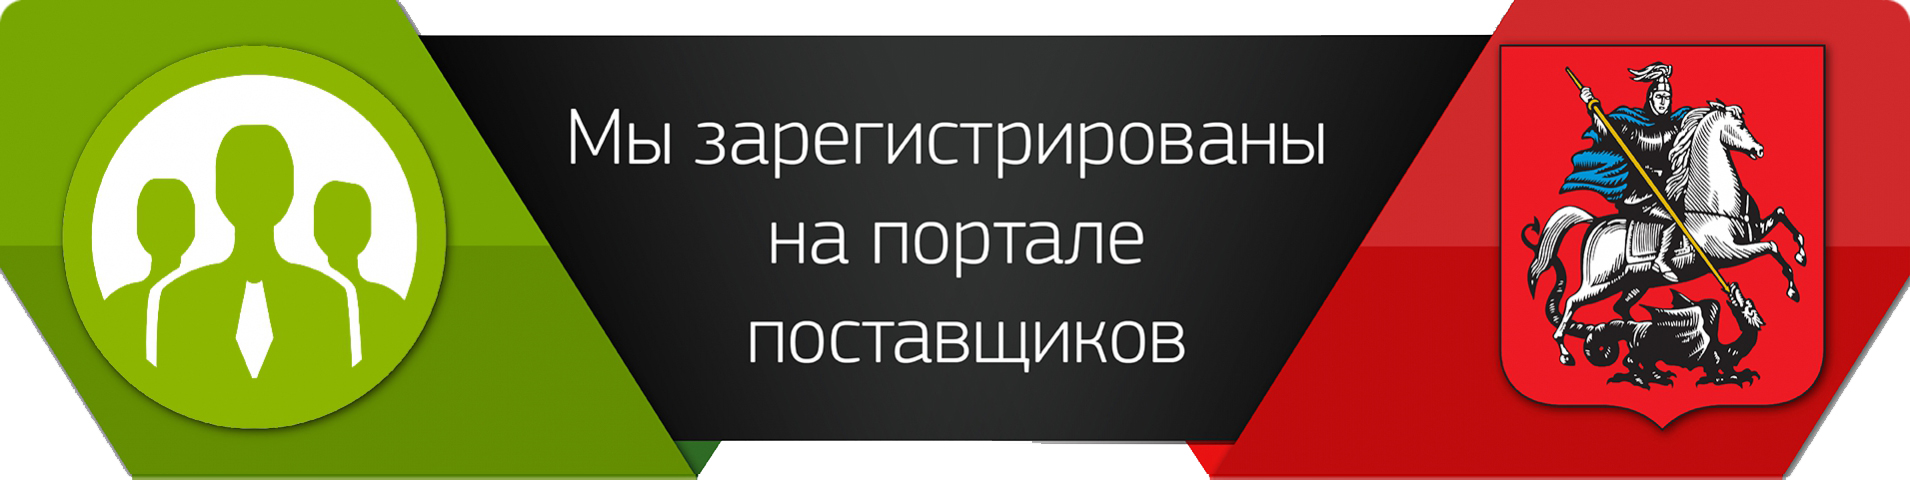 https://sarayli-m.ru/images/upload/portal_postavschikov.jpg